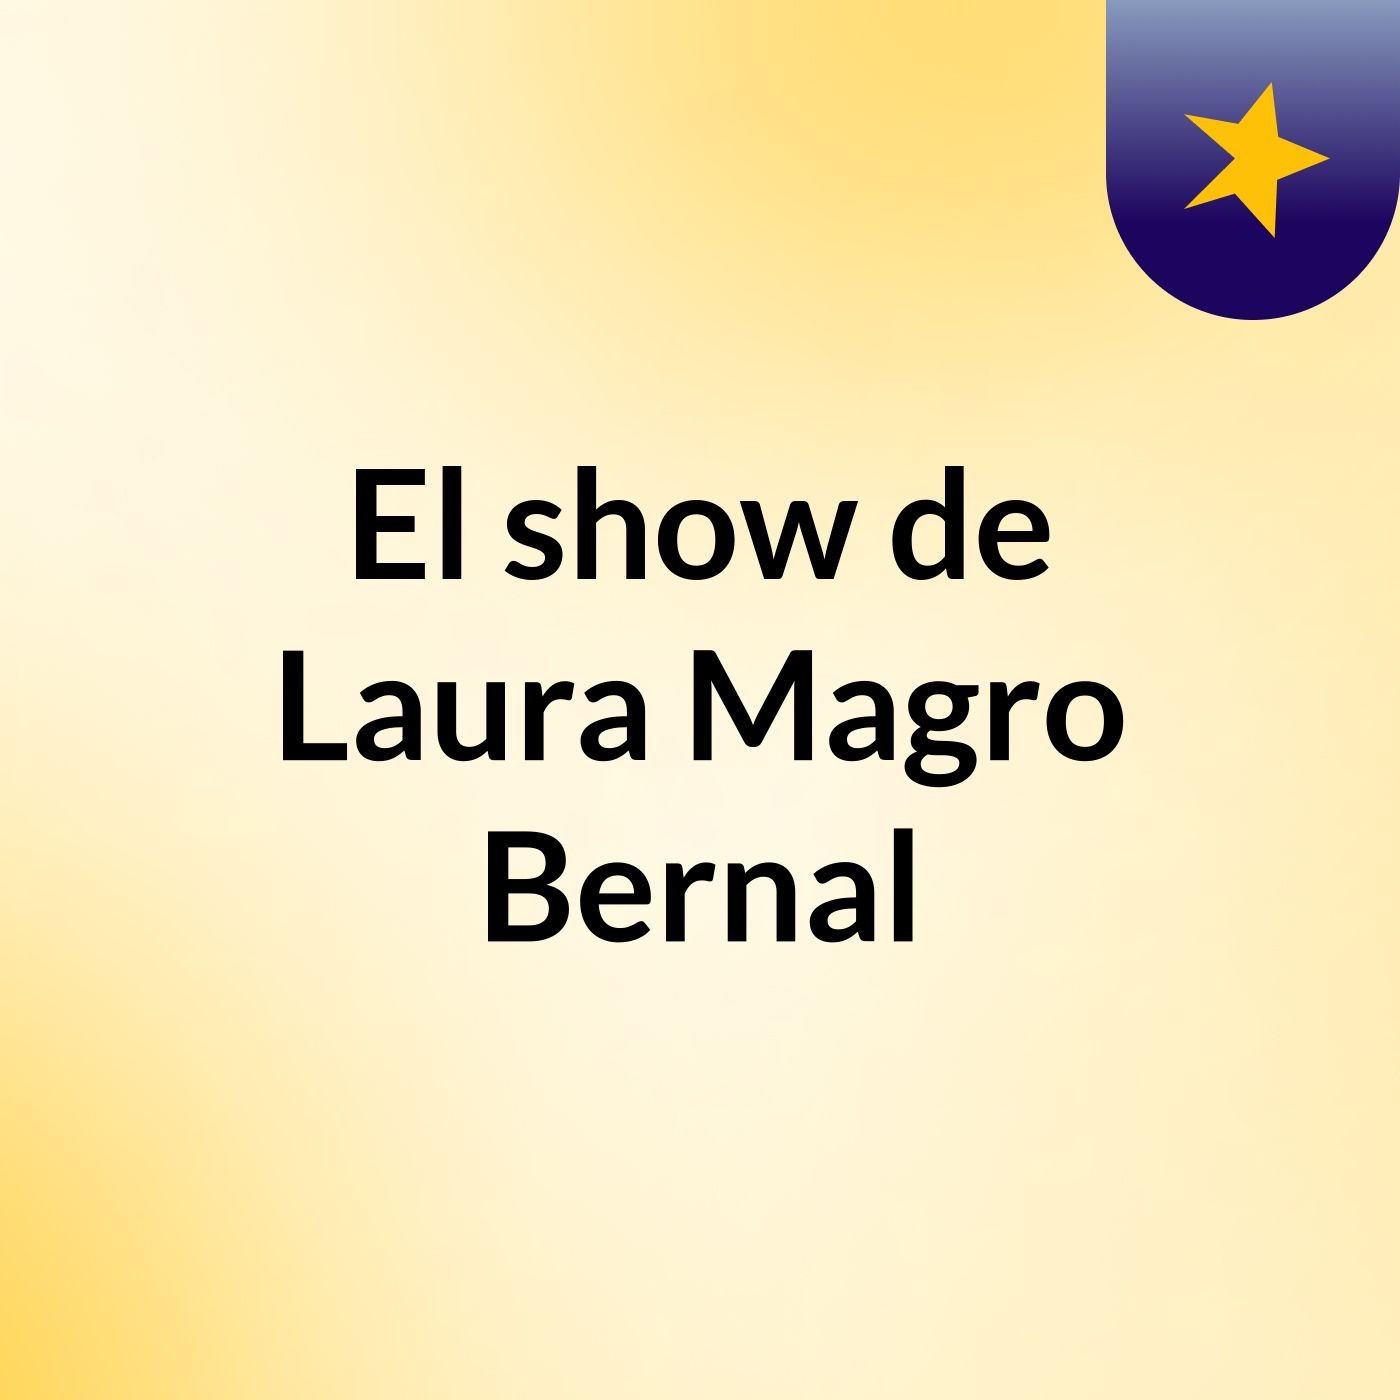 El show de Laura Magro Bernal